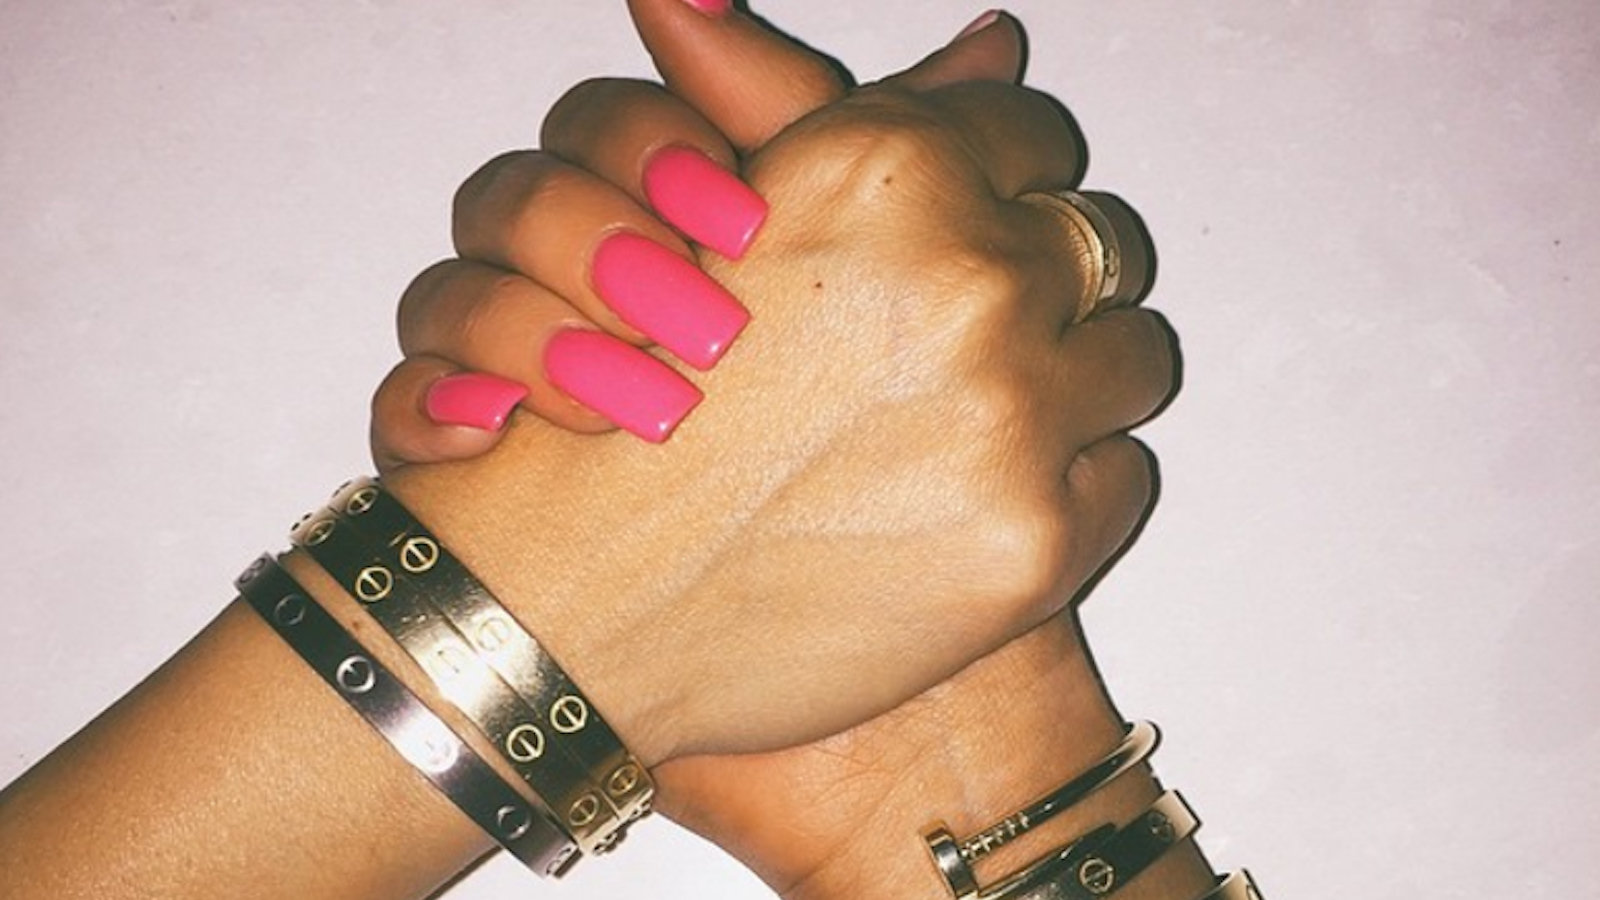 Cartier Bracelet Gold Rich Girl Besties Nails Pink Galore 